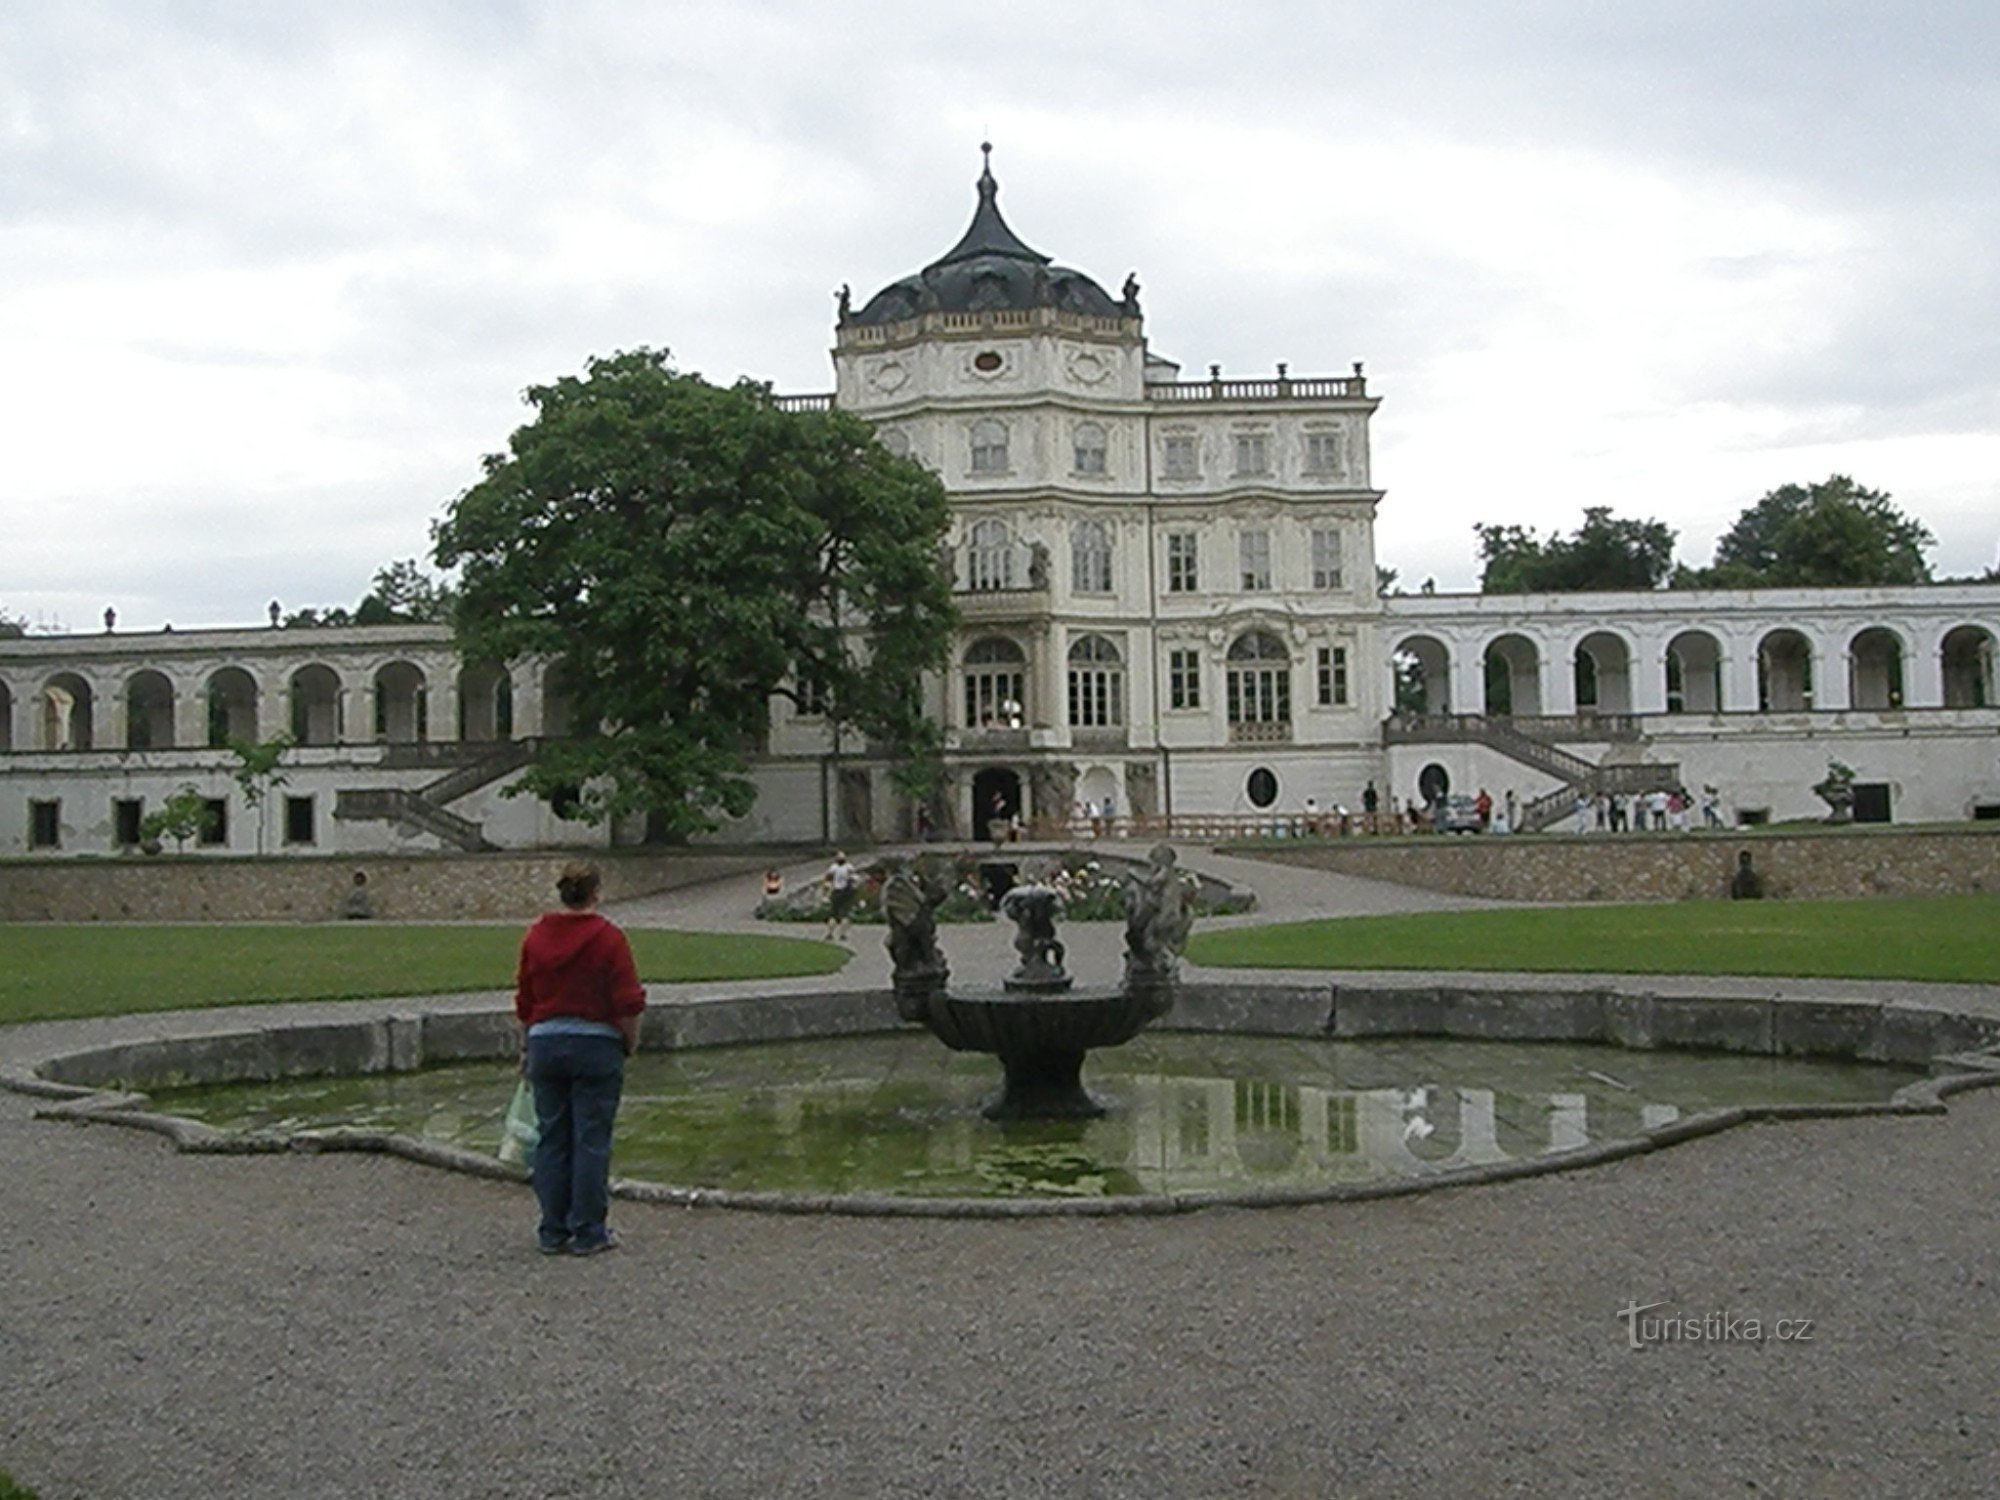 Le château baroque local avec ses bassins et son étang rappelle peut-être un peu un petit Versailles